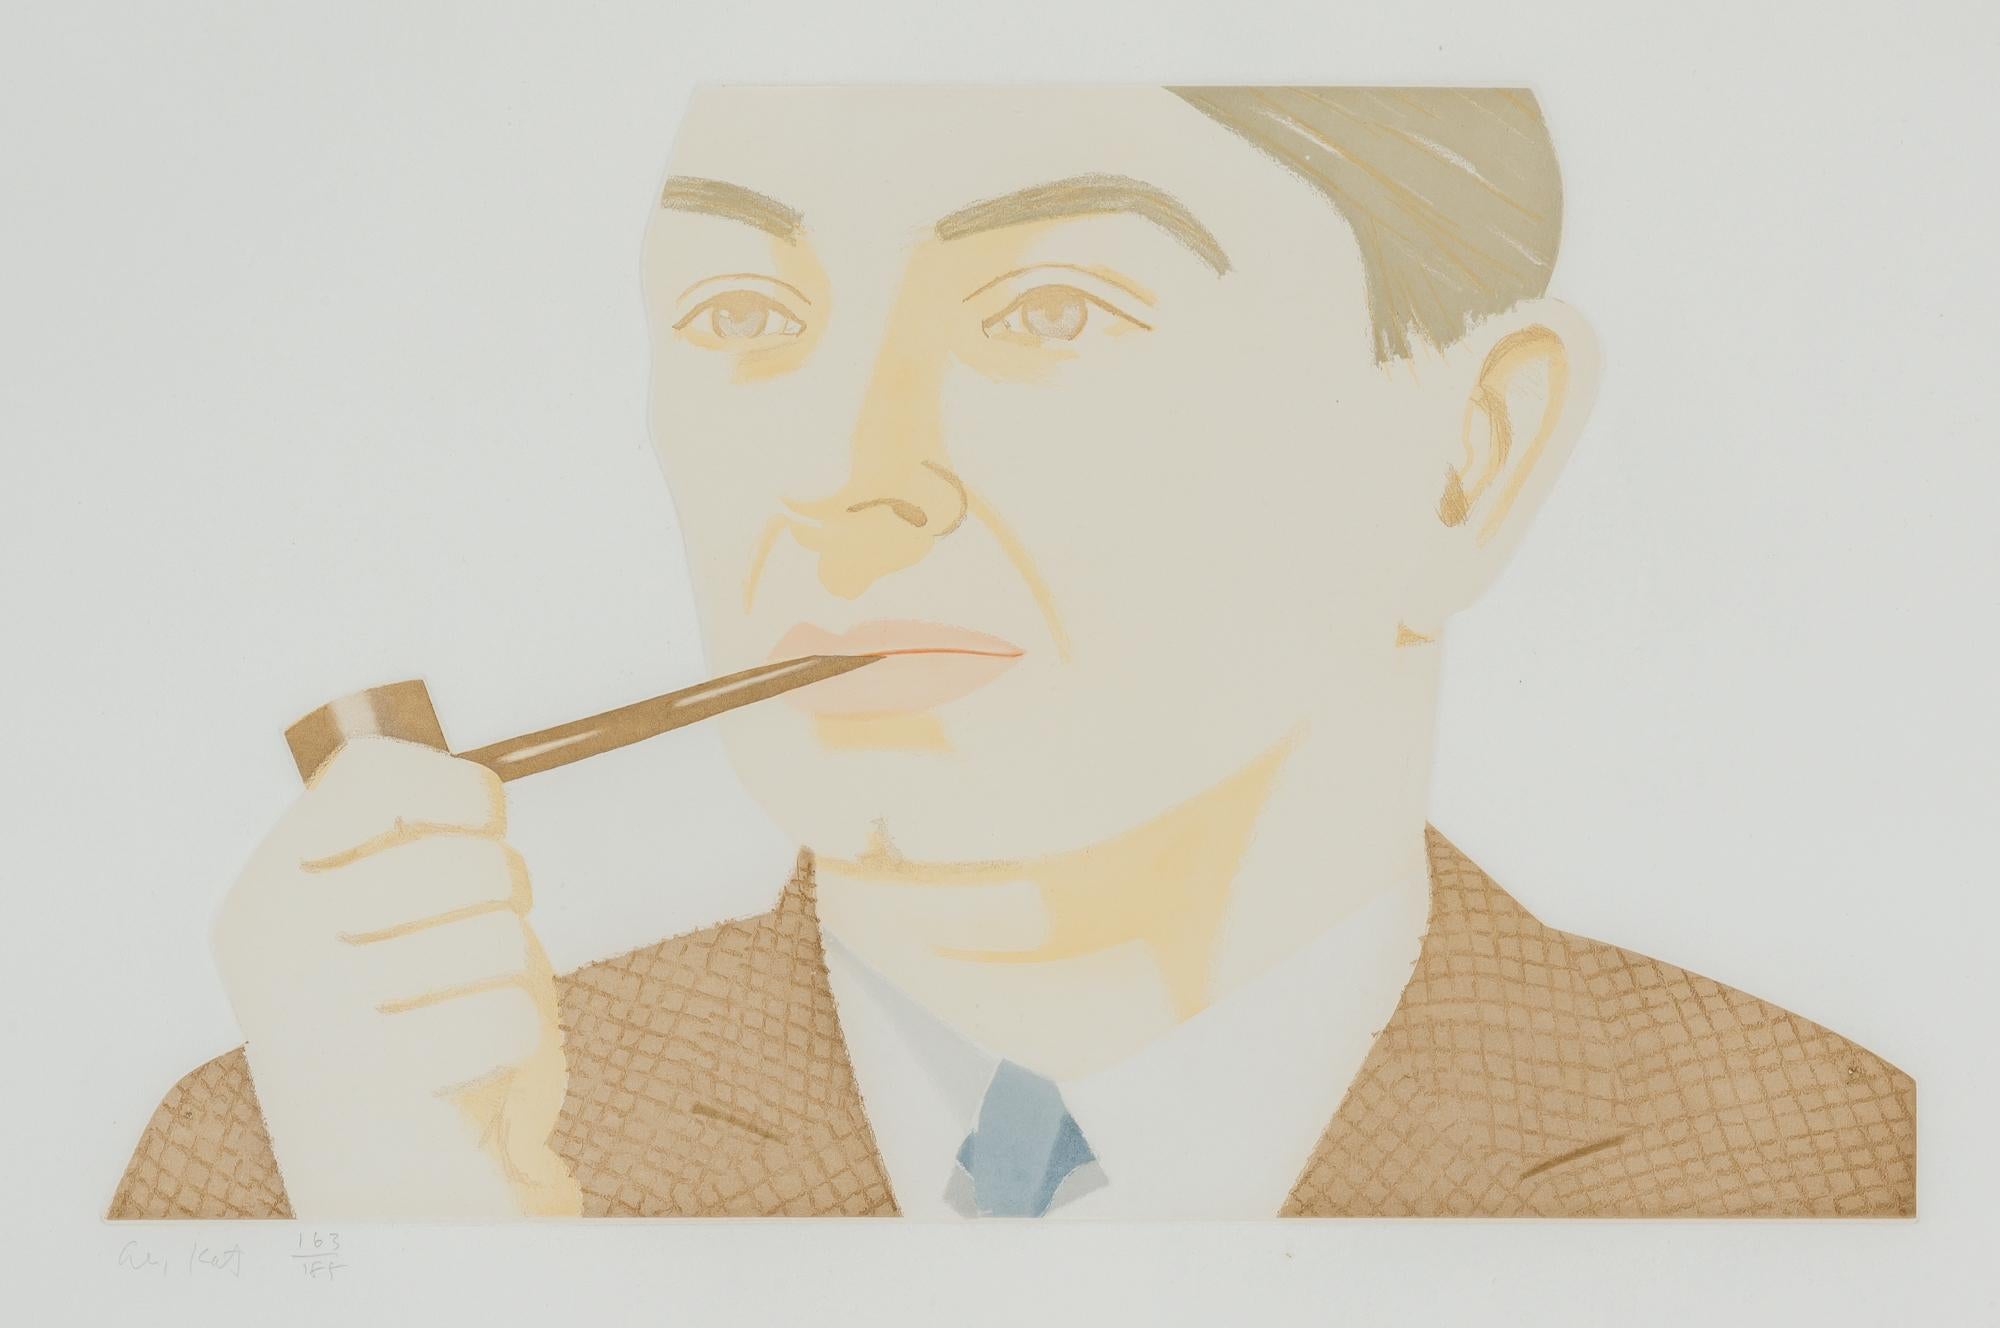 ALEX KATZ (1927-aujourd'hui)

Man with Pipe' d'Alex Katz est une eau-forte et aquatinte en couleur, 1984, sur papier Rives BFK, signée et numérotée 163/185 au crayon, imprimée par Aldo Crommelynck, coéditée par Aldo Crommelynck, Paris et The